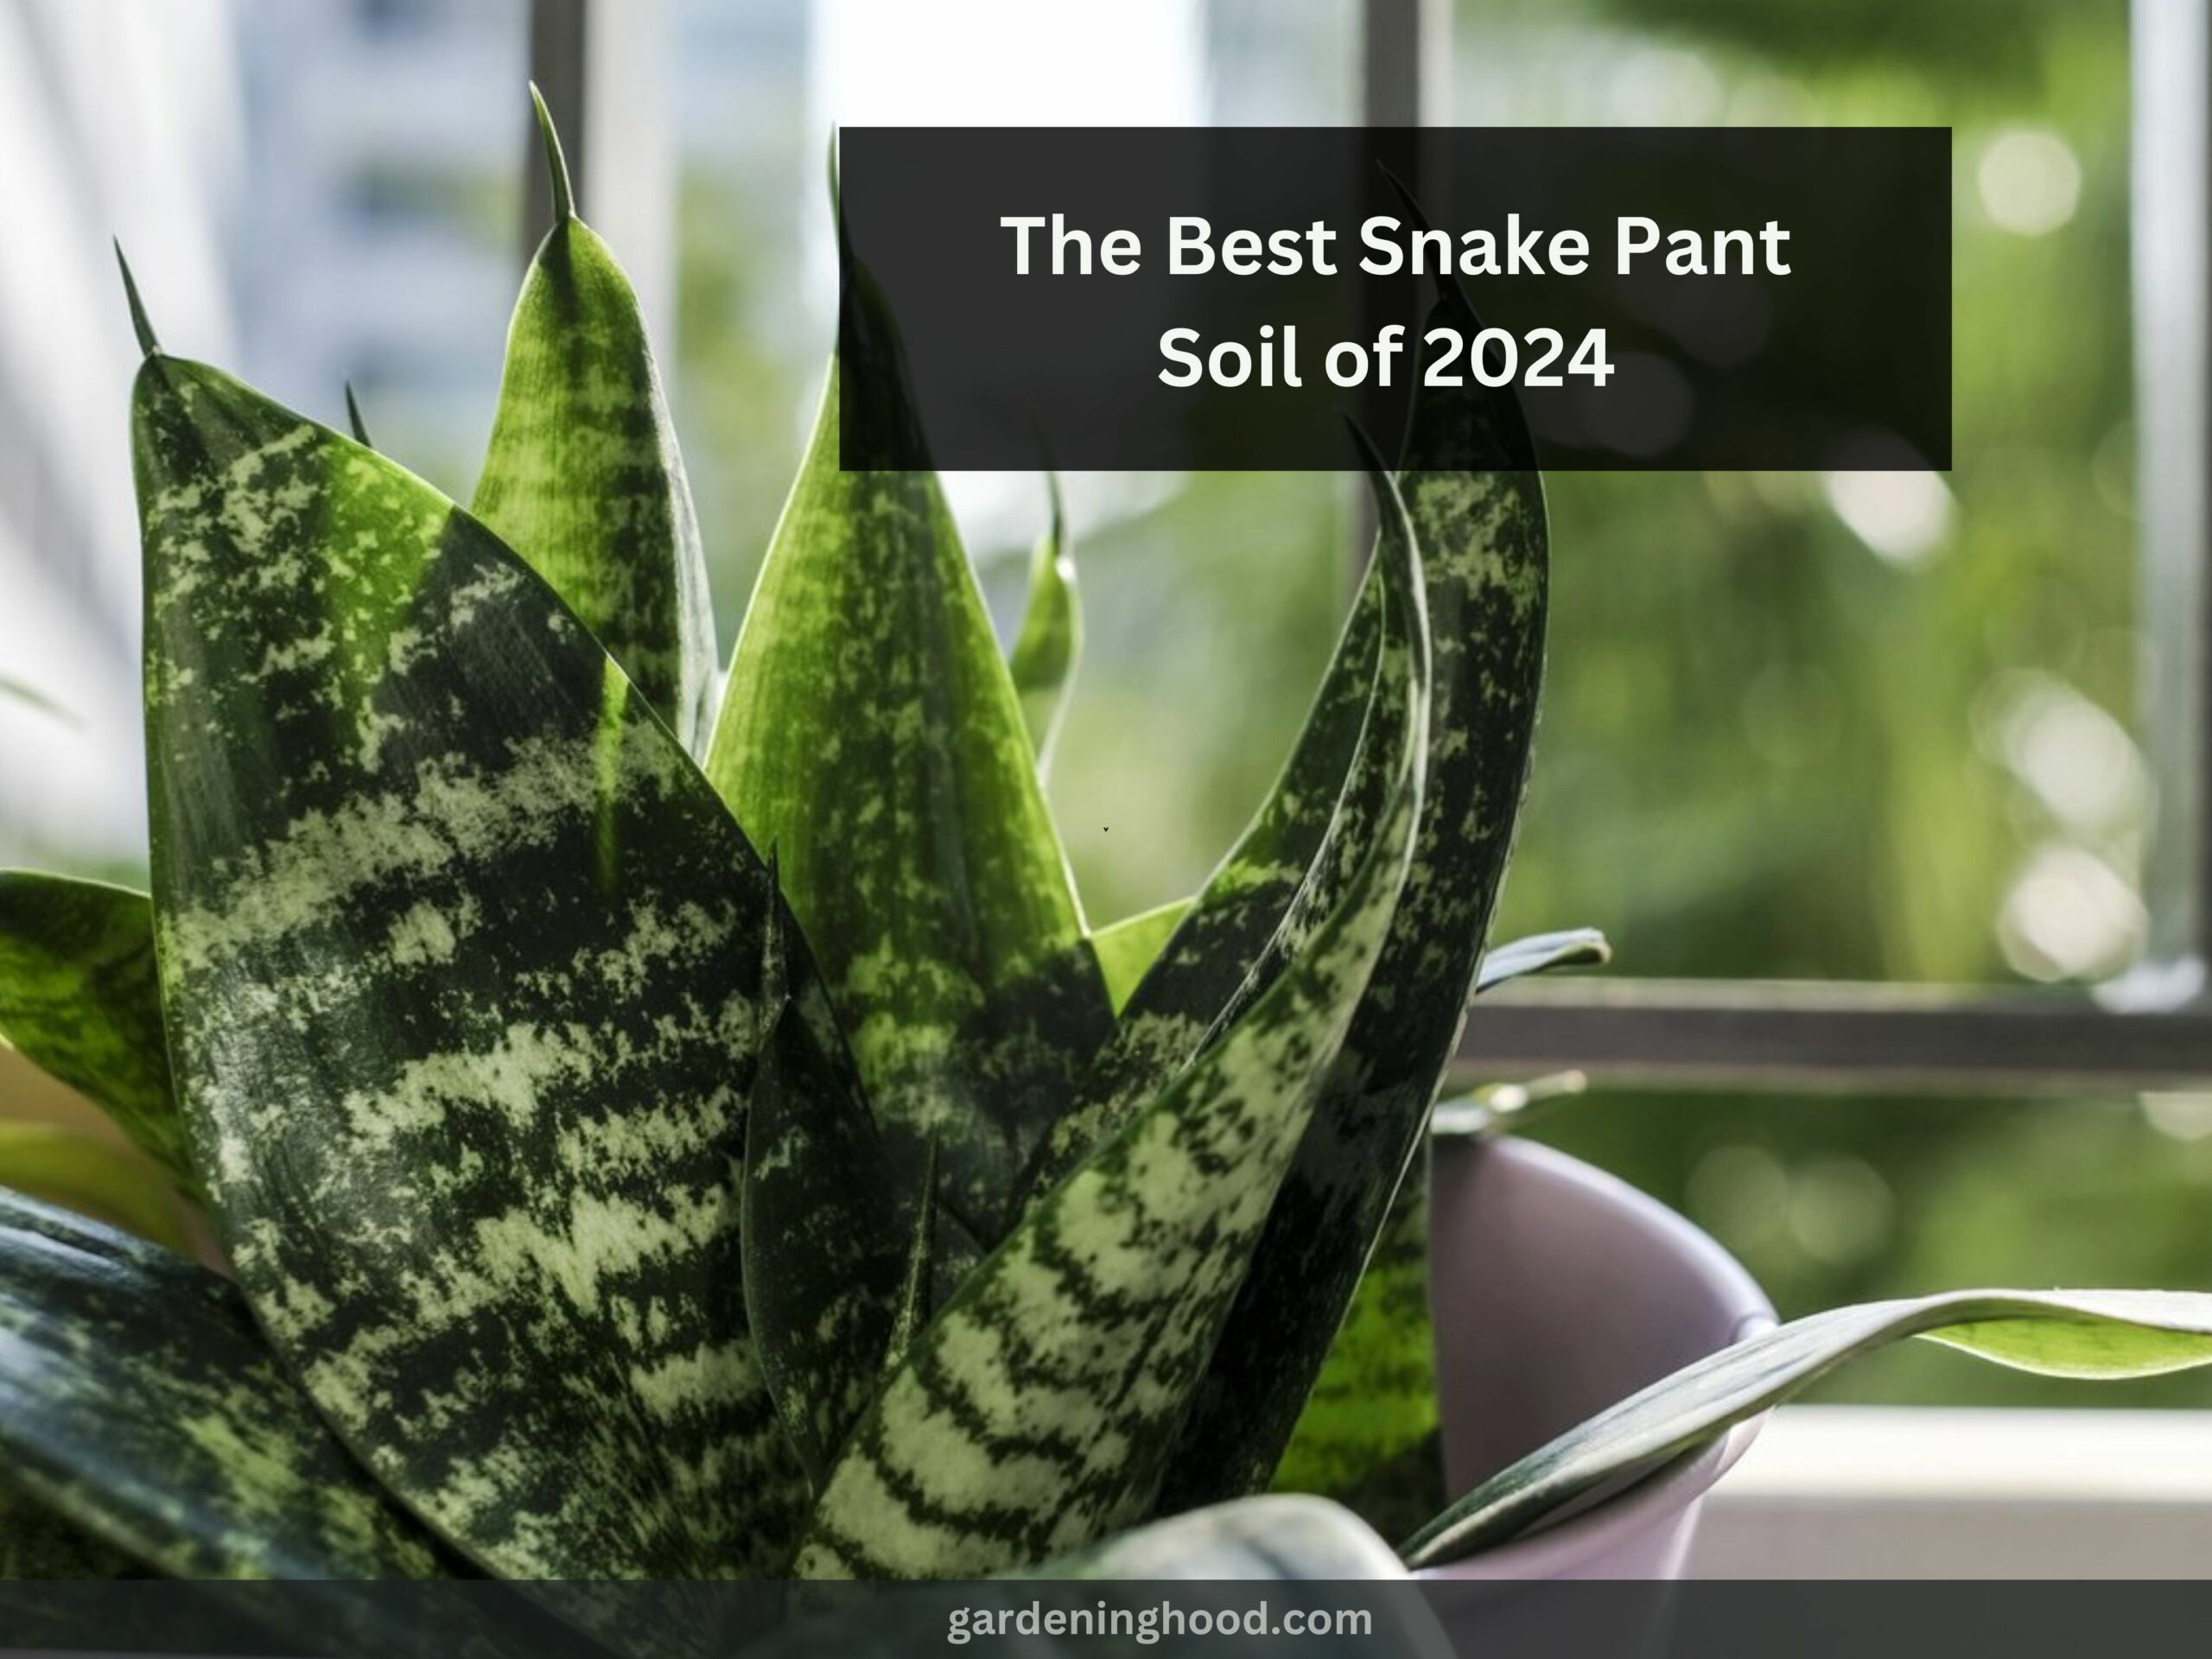 The Best Snake Pant Soil of 2024 